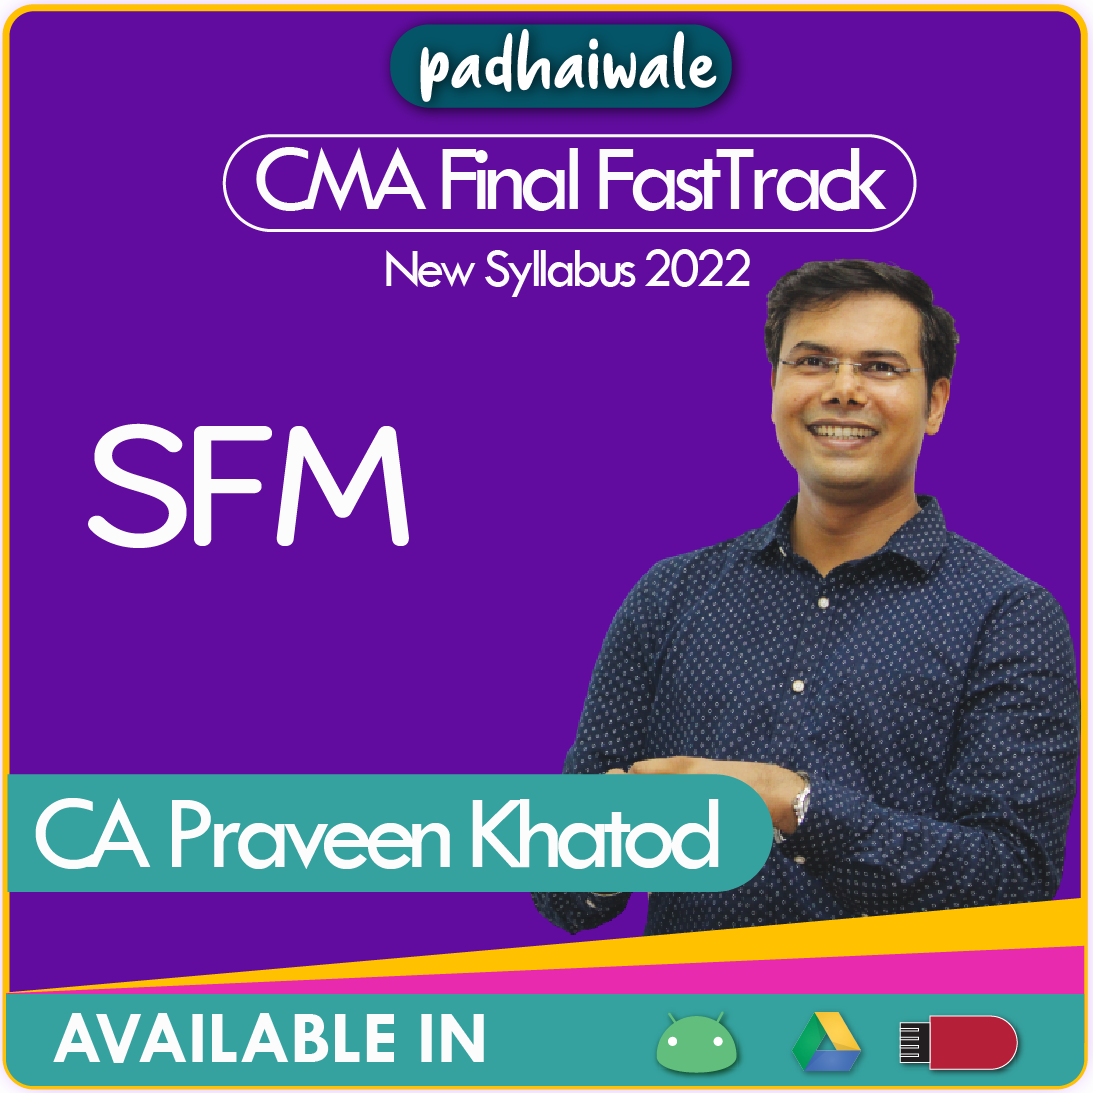 CMA Final SFM FastTrack Praveen Khatod